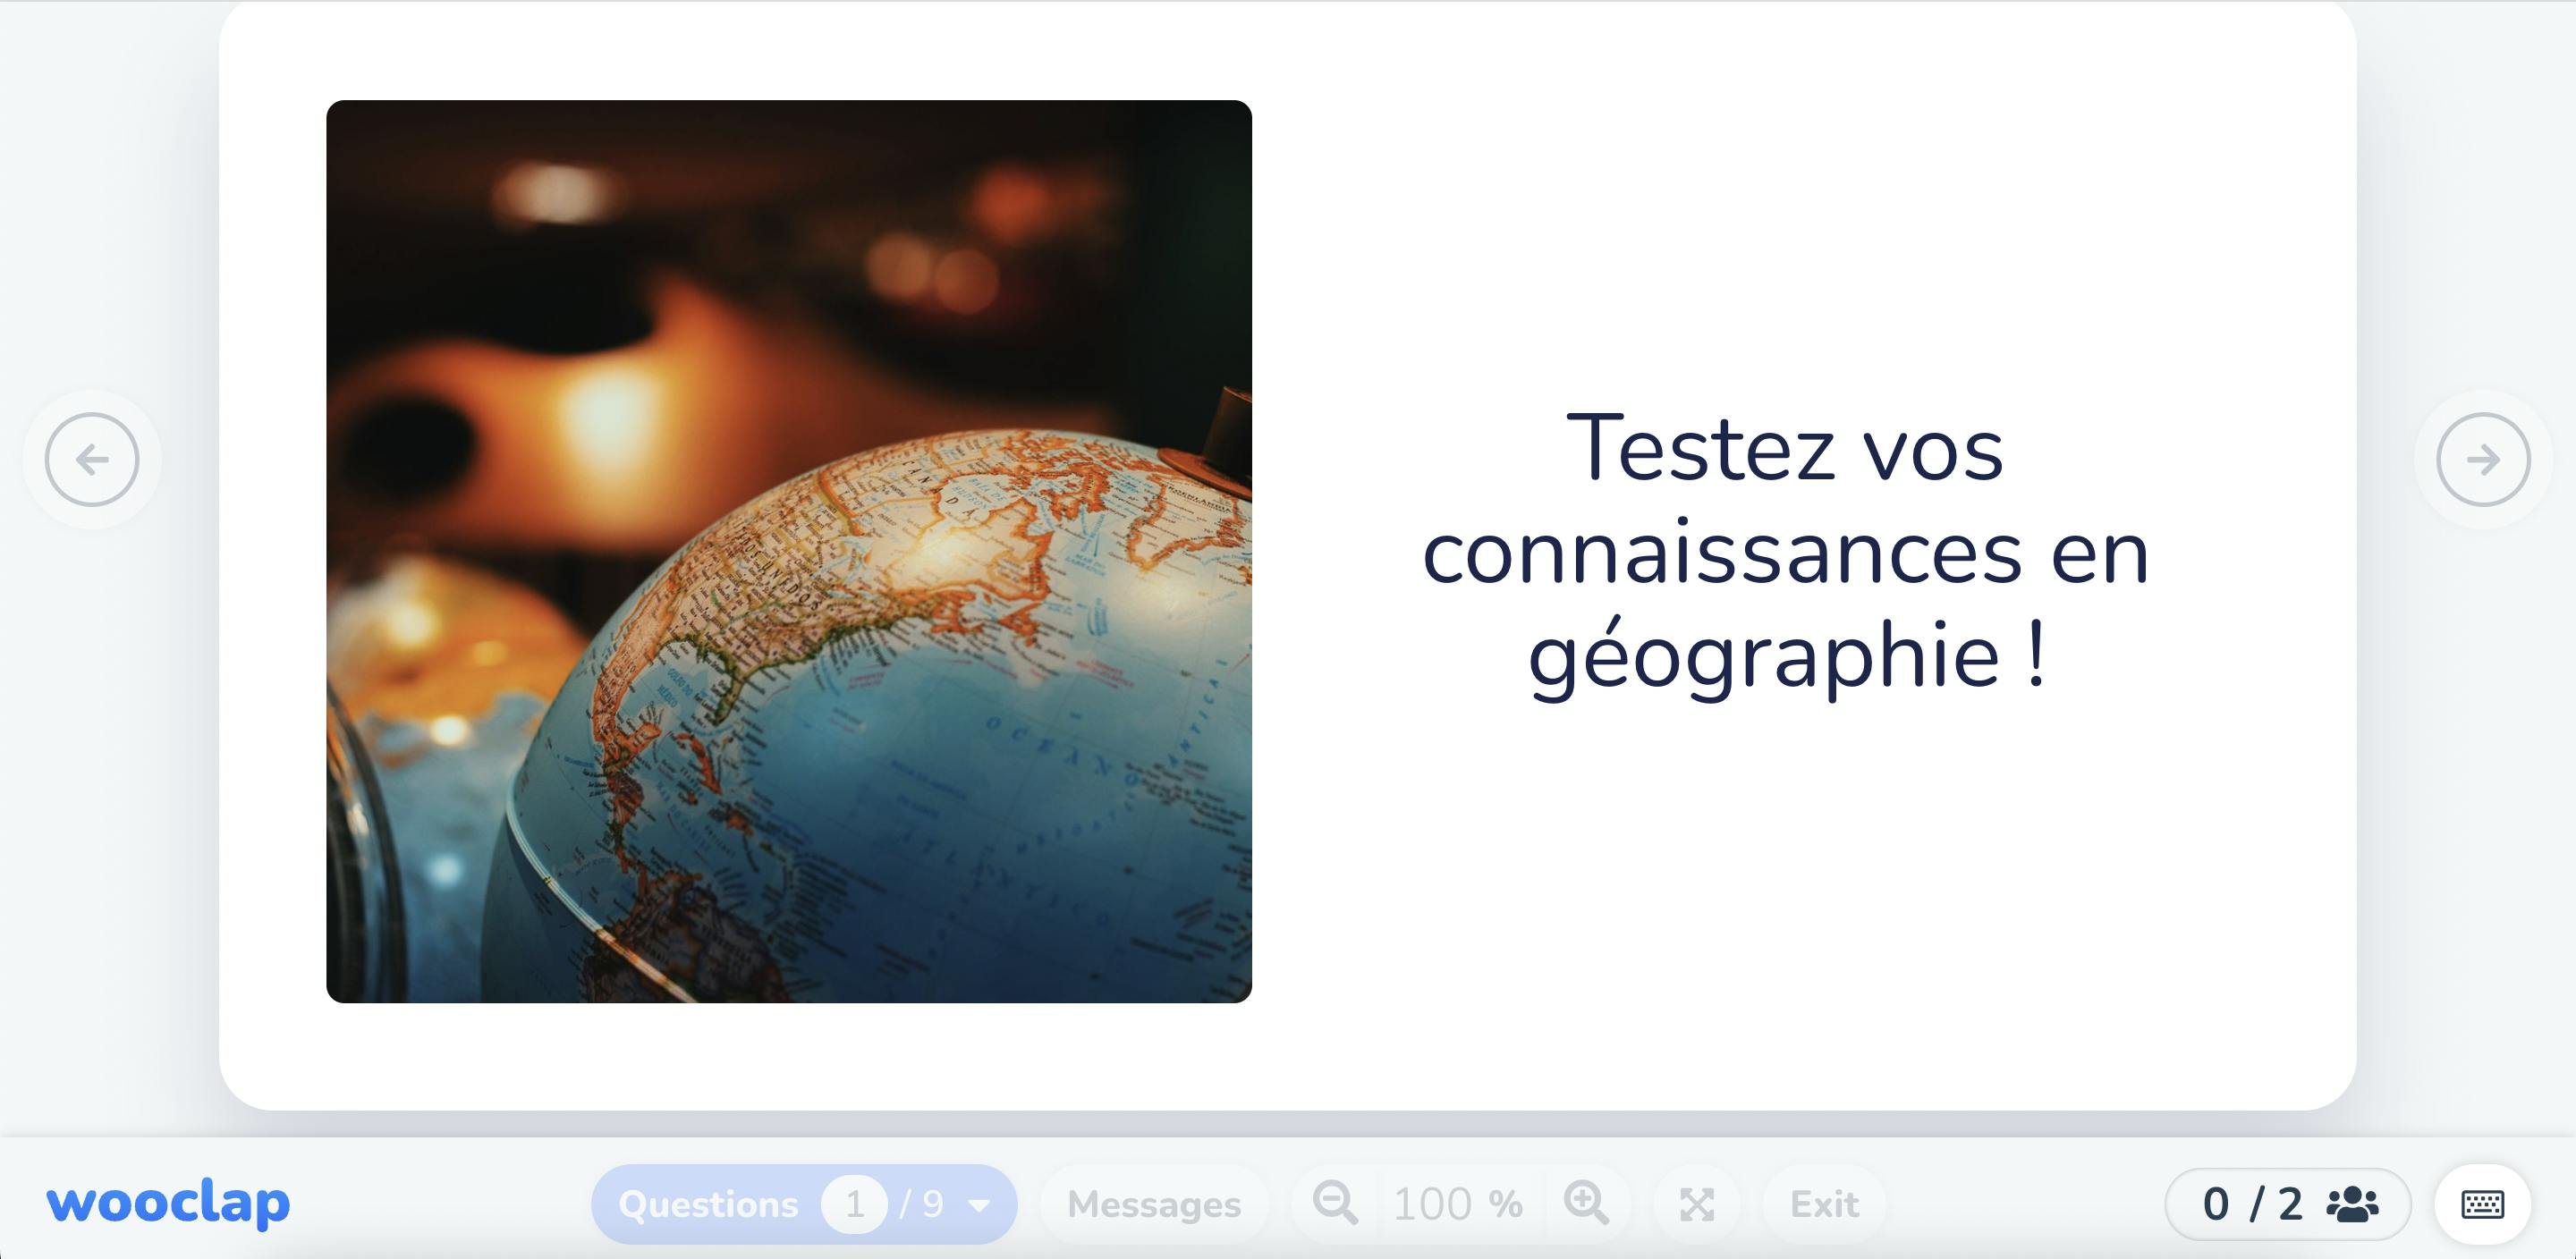 Testez vos connaissances en géographie !